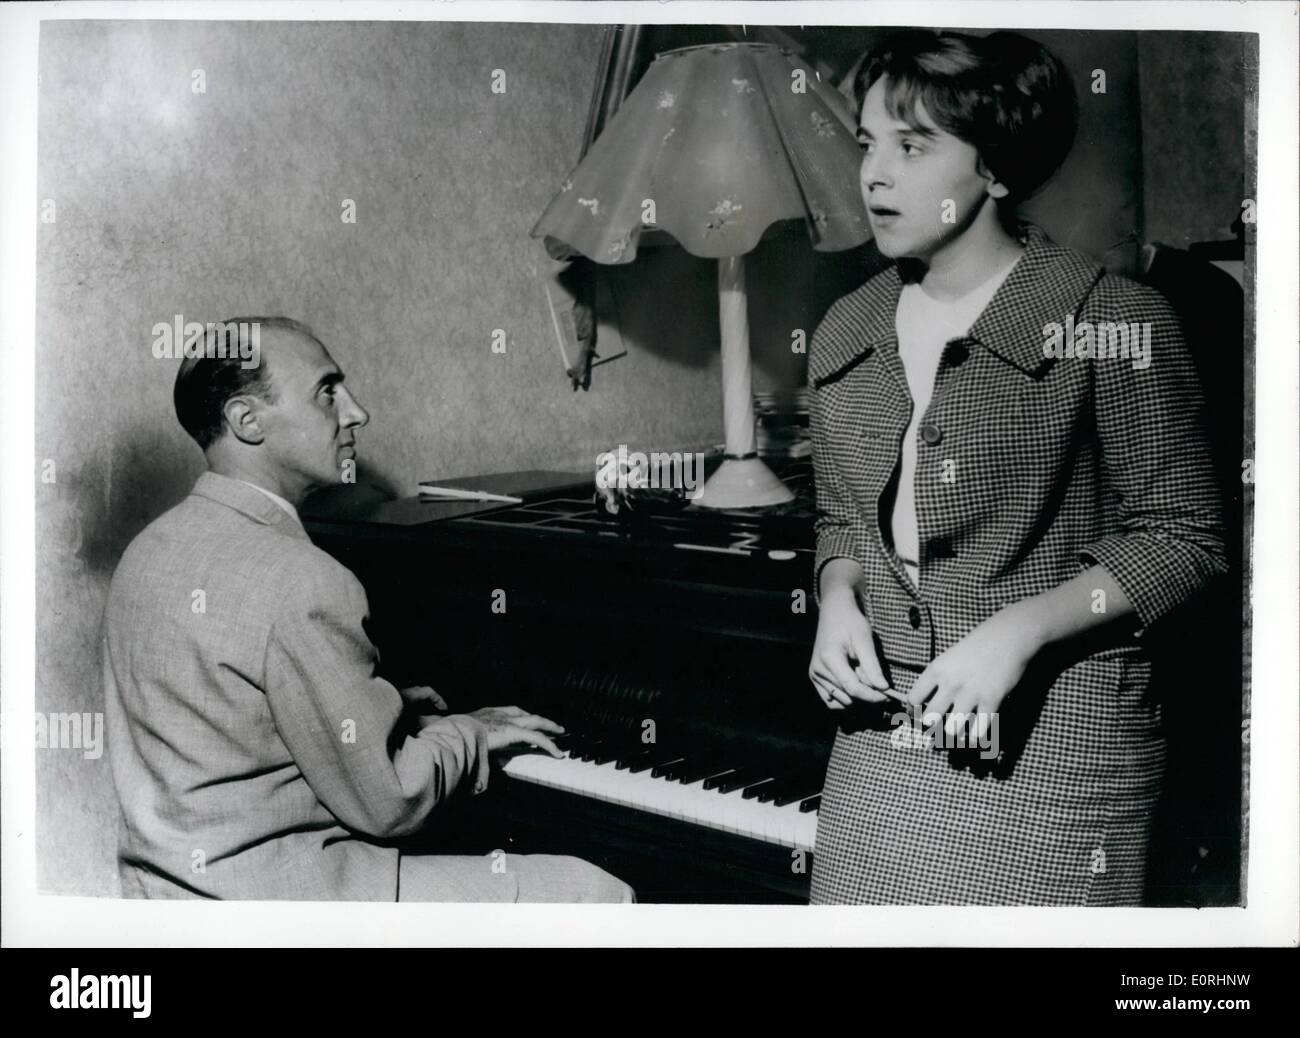 Nov 11, 1959 - compositor italiano indultado tras catorce años de cárcel hija canta su primera canción.: Andreina Graziosi 17 Foto de stock